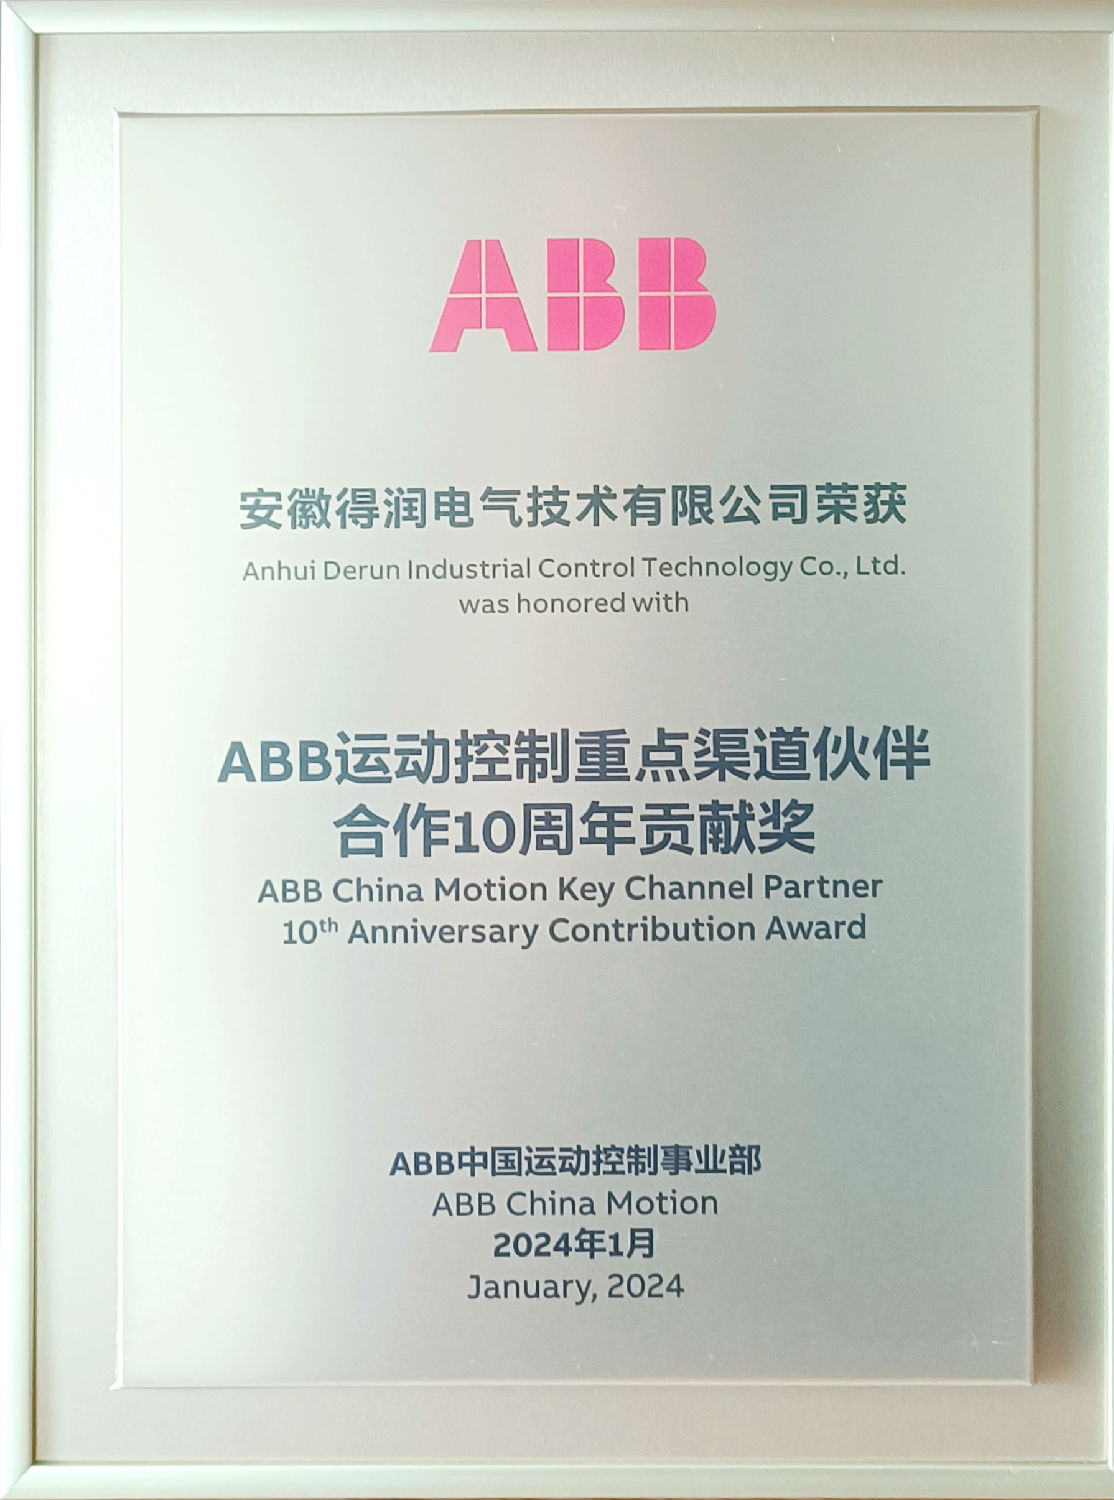 得润电气荣获ABB运动控制重点渠道伙伴合作10周年贡献奖